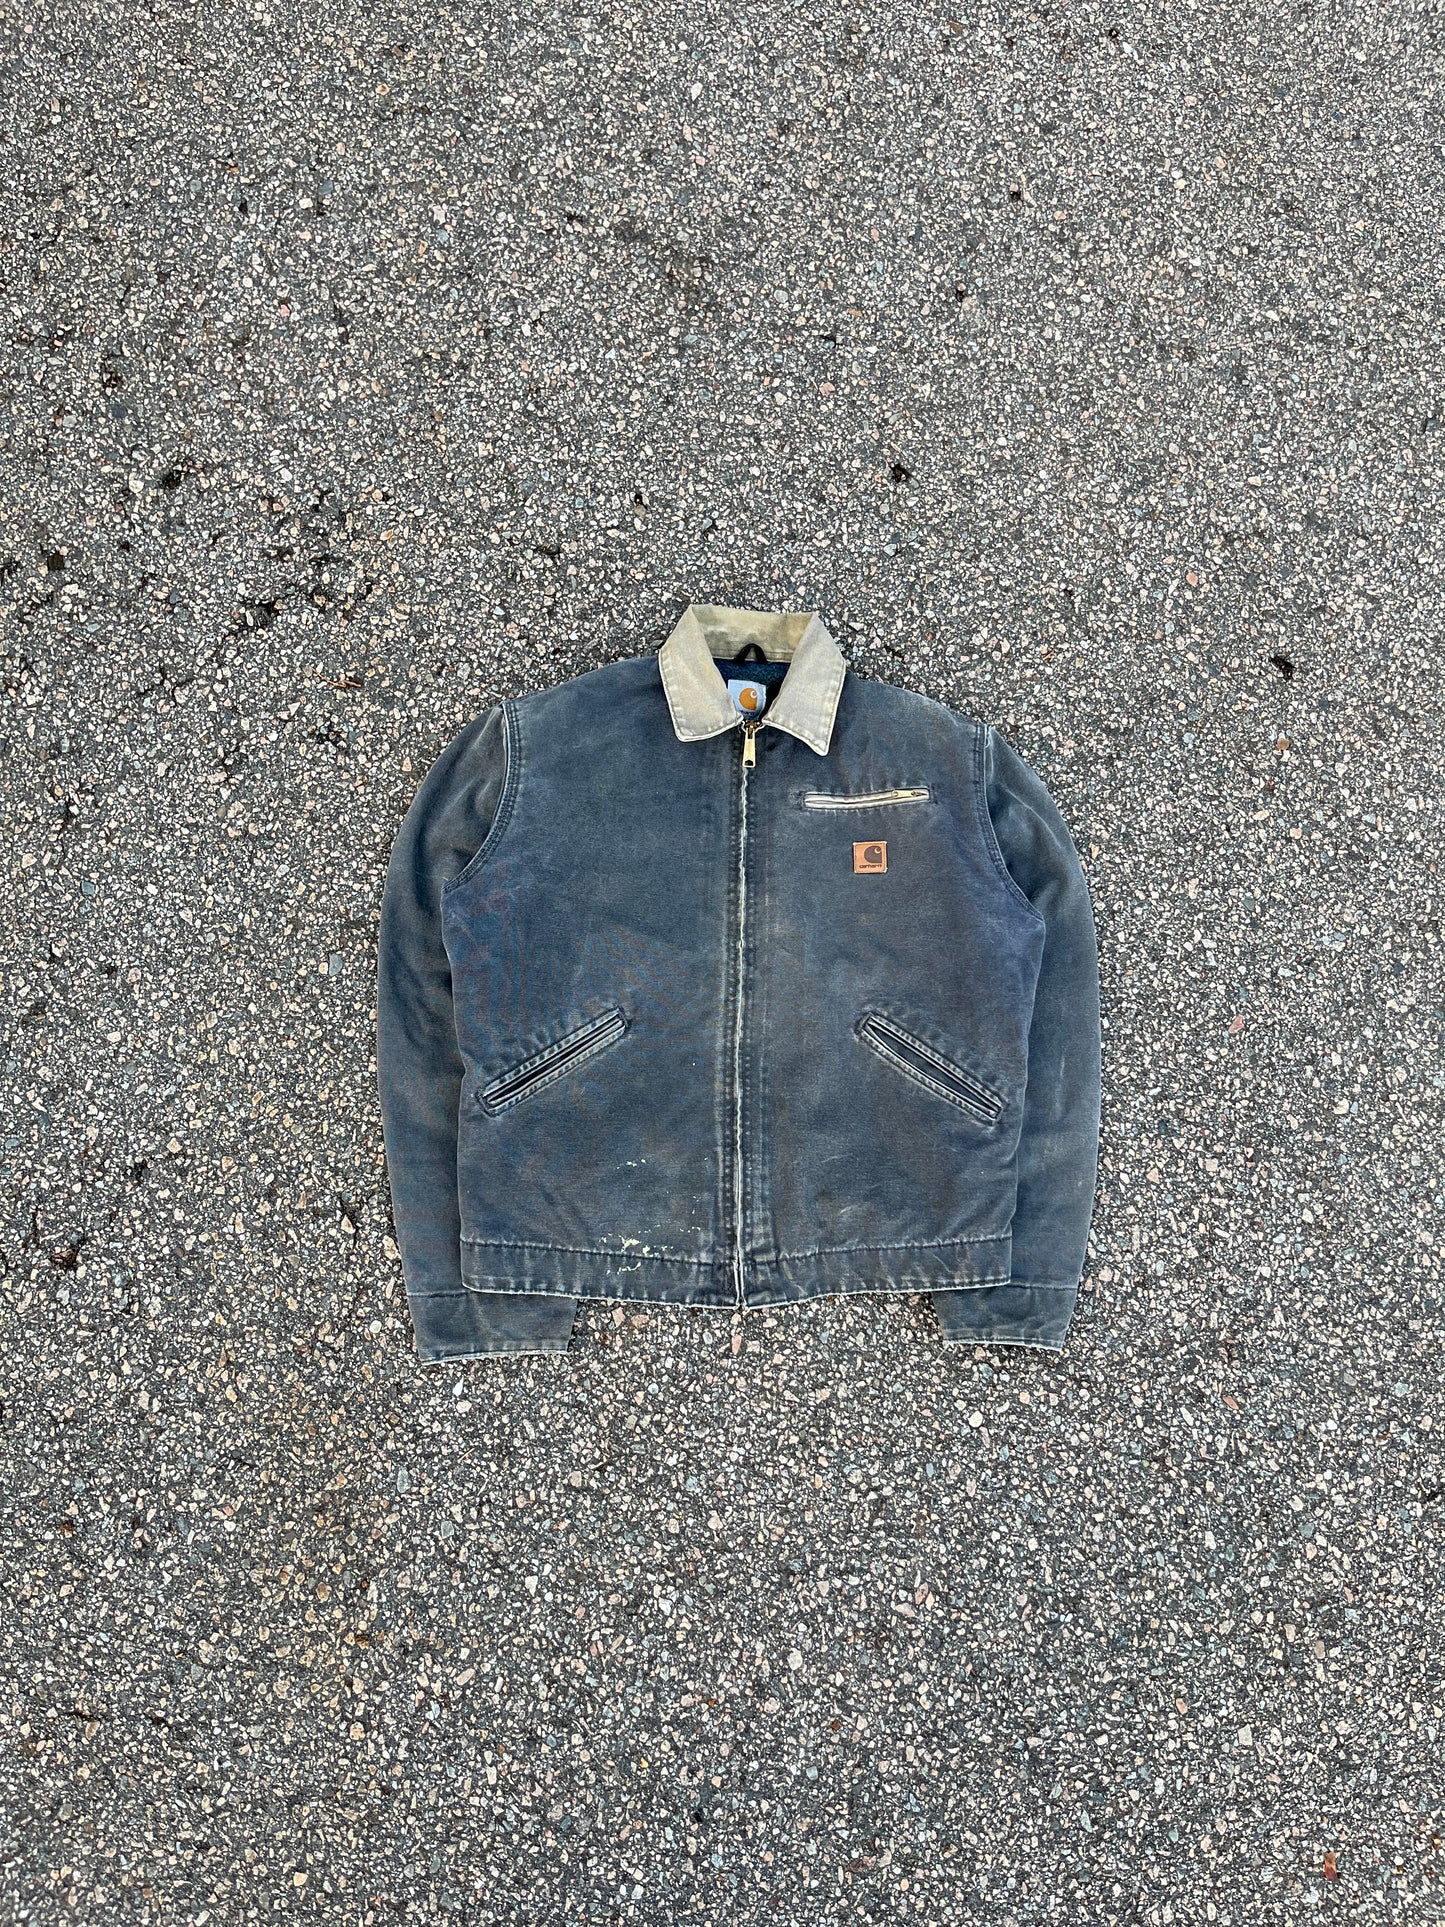 Faded Petrol Blue Carhartt Detroit Jacket - Medium